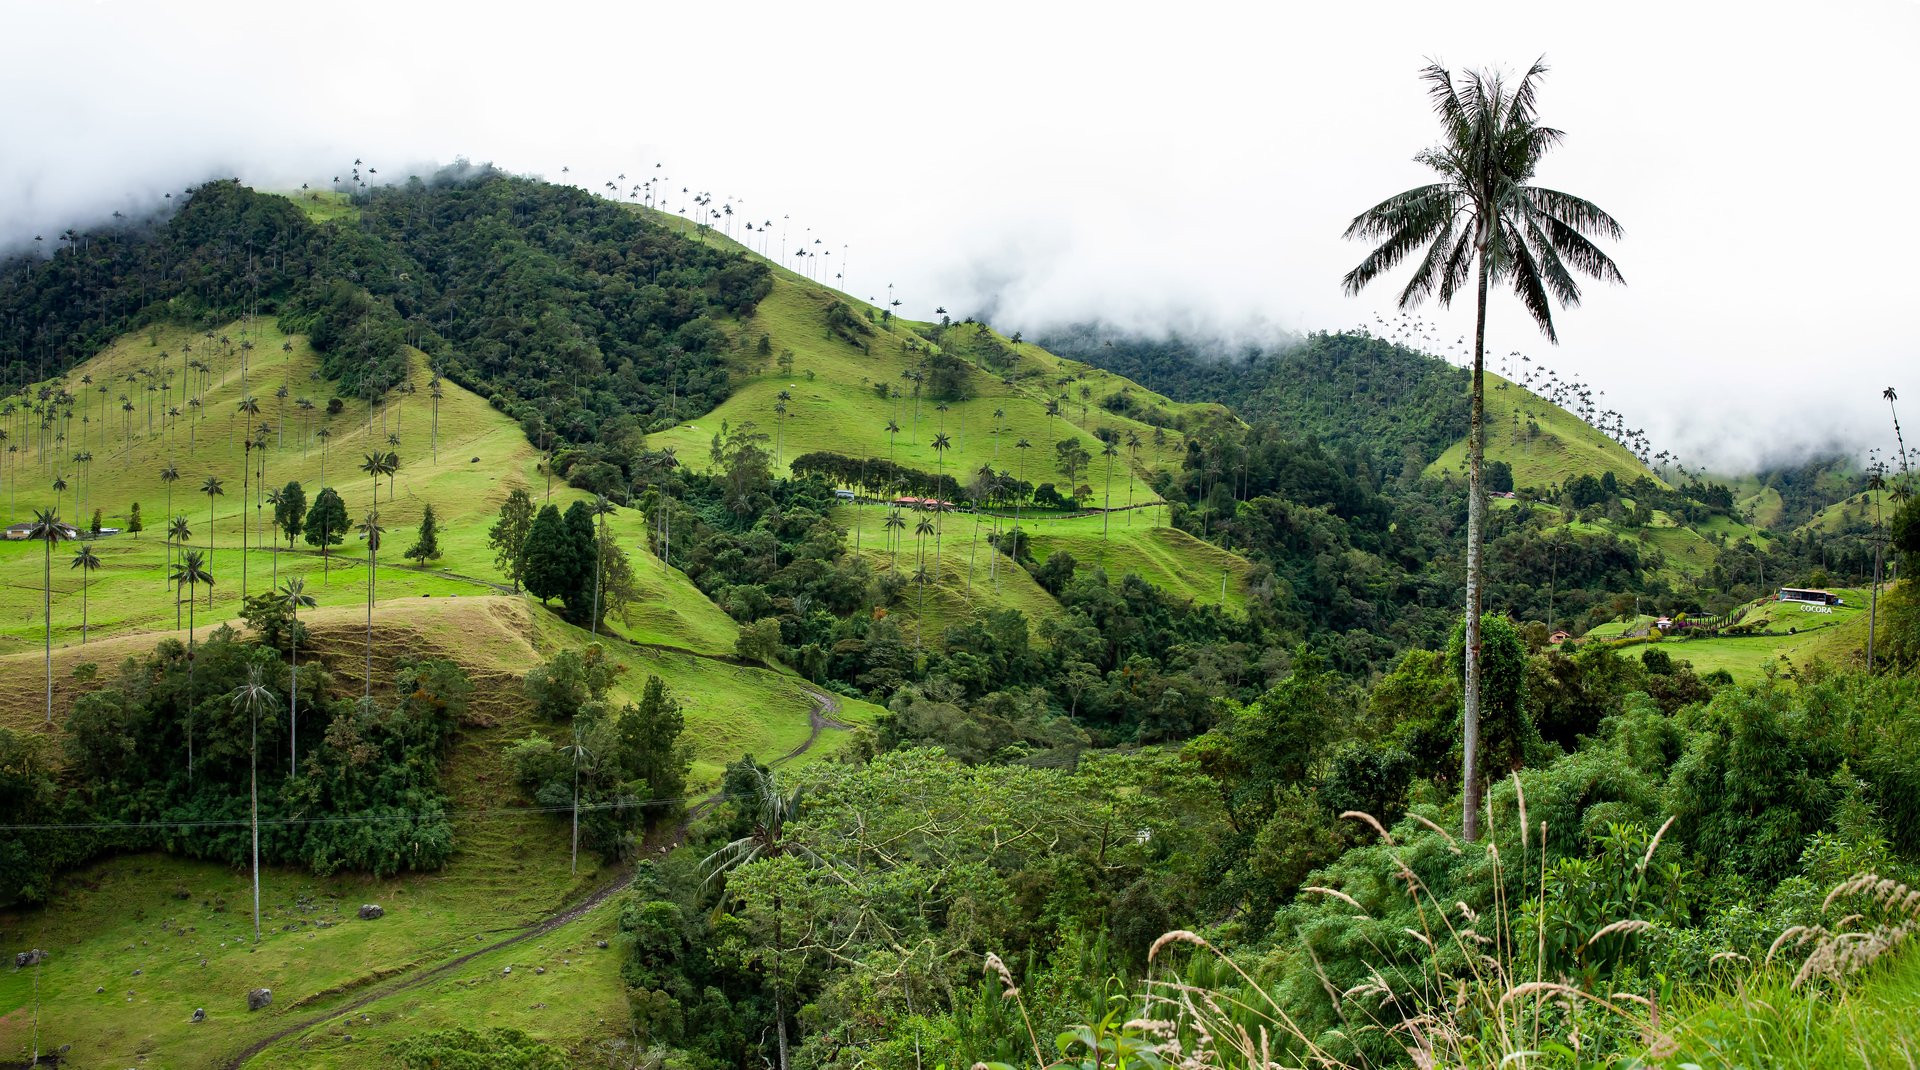 Vue sur la belle forêt nuageuse et les Palmiers de cire de Quindio dans la vallée de Cocora, située à Salento, dans la région de Quindio en Colombie.